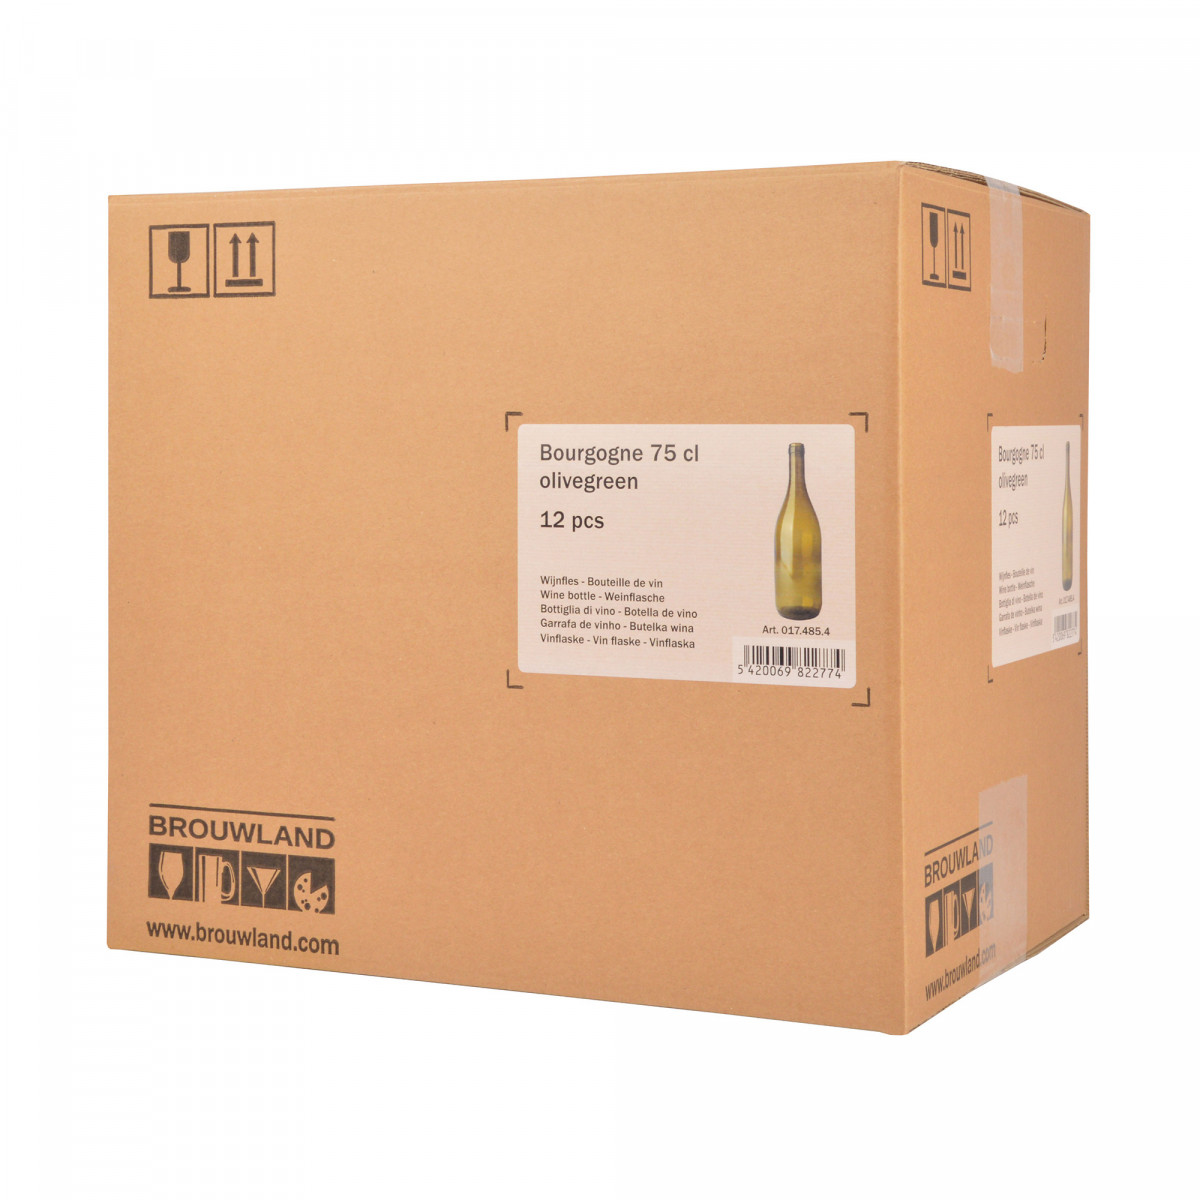 Wijnfles Bourgogne 75 cl, olijfgroen, doos 12 st.